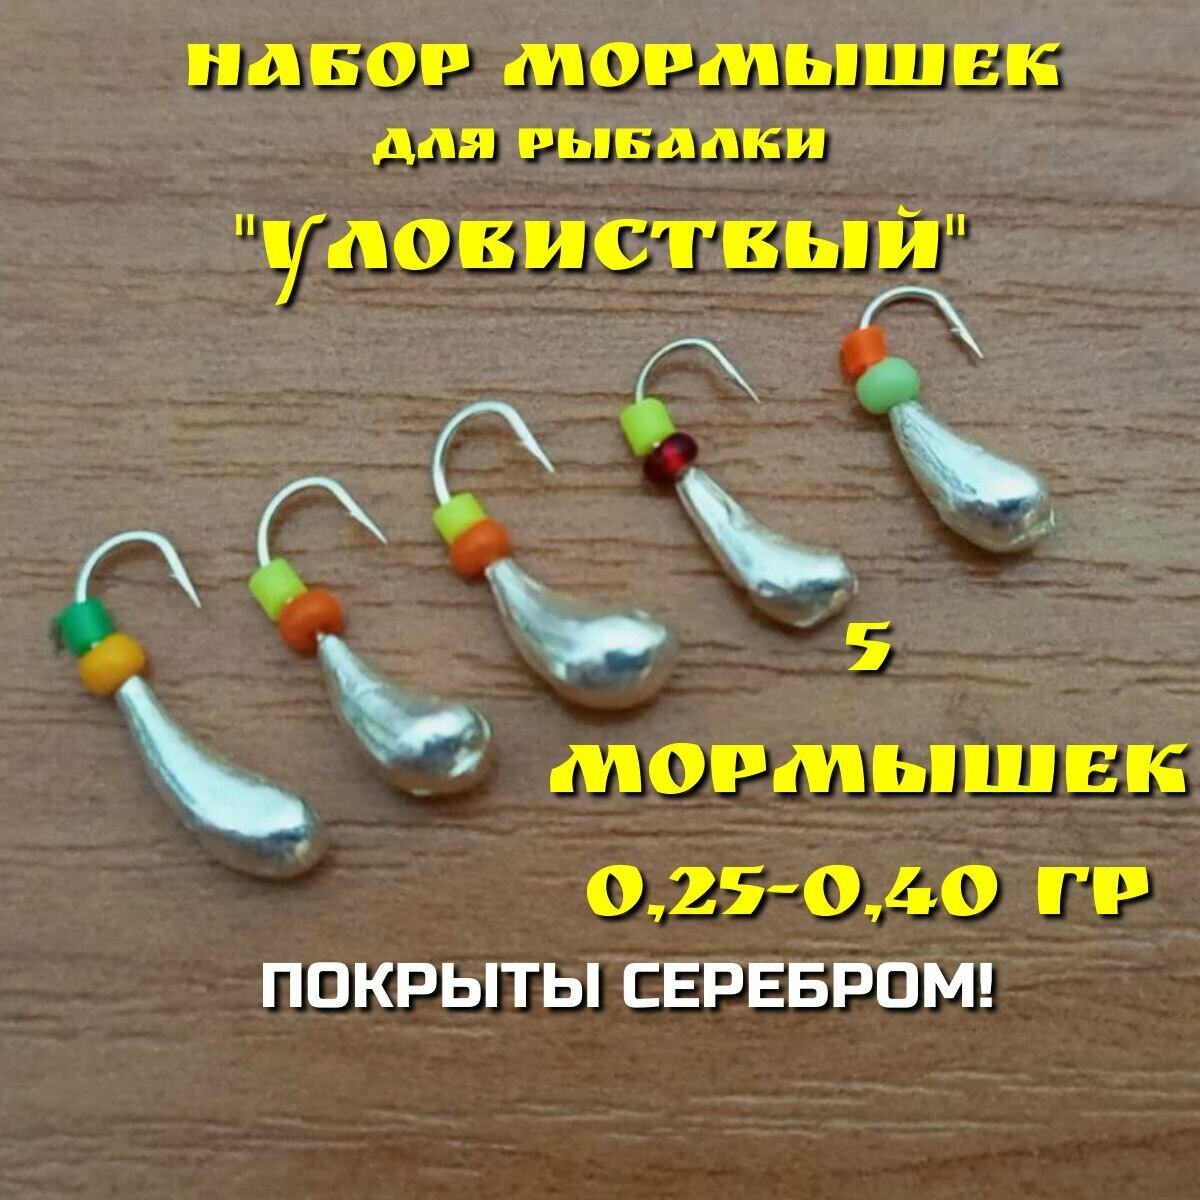 Мормышки для зимней и летней рыбалки, набор 5 штук, покрытые серебром